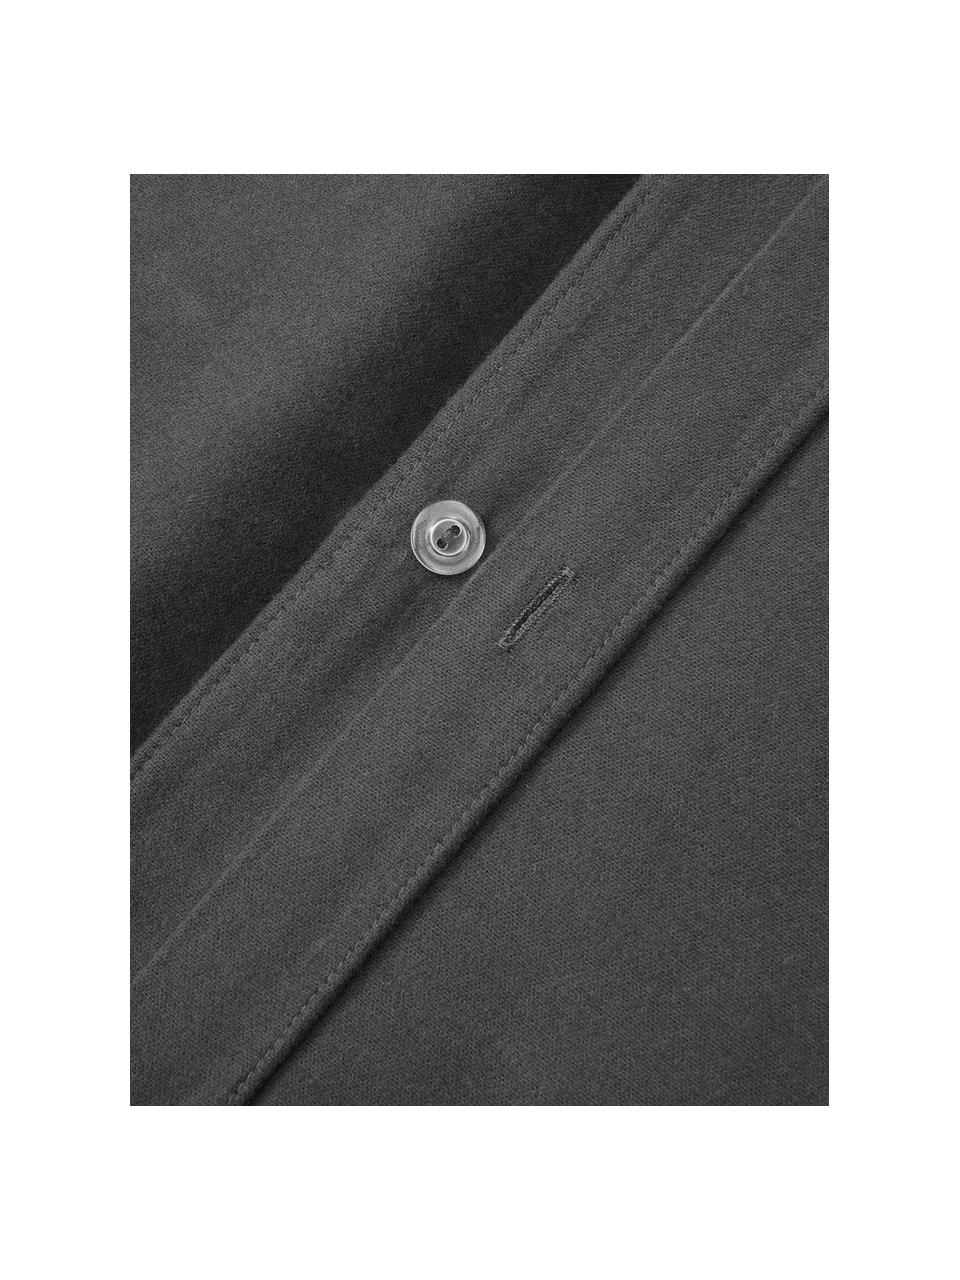 Flanellen dekbedovertrek Biba van katoen in grijs, Weeftechniek: flanel Flanel is een knuf, Grijs, B 200 x L 200 cm